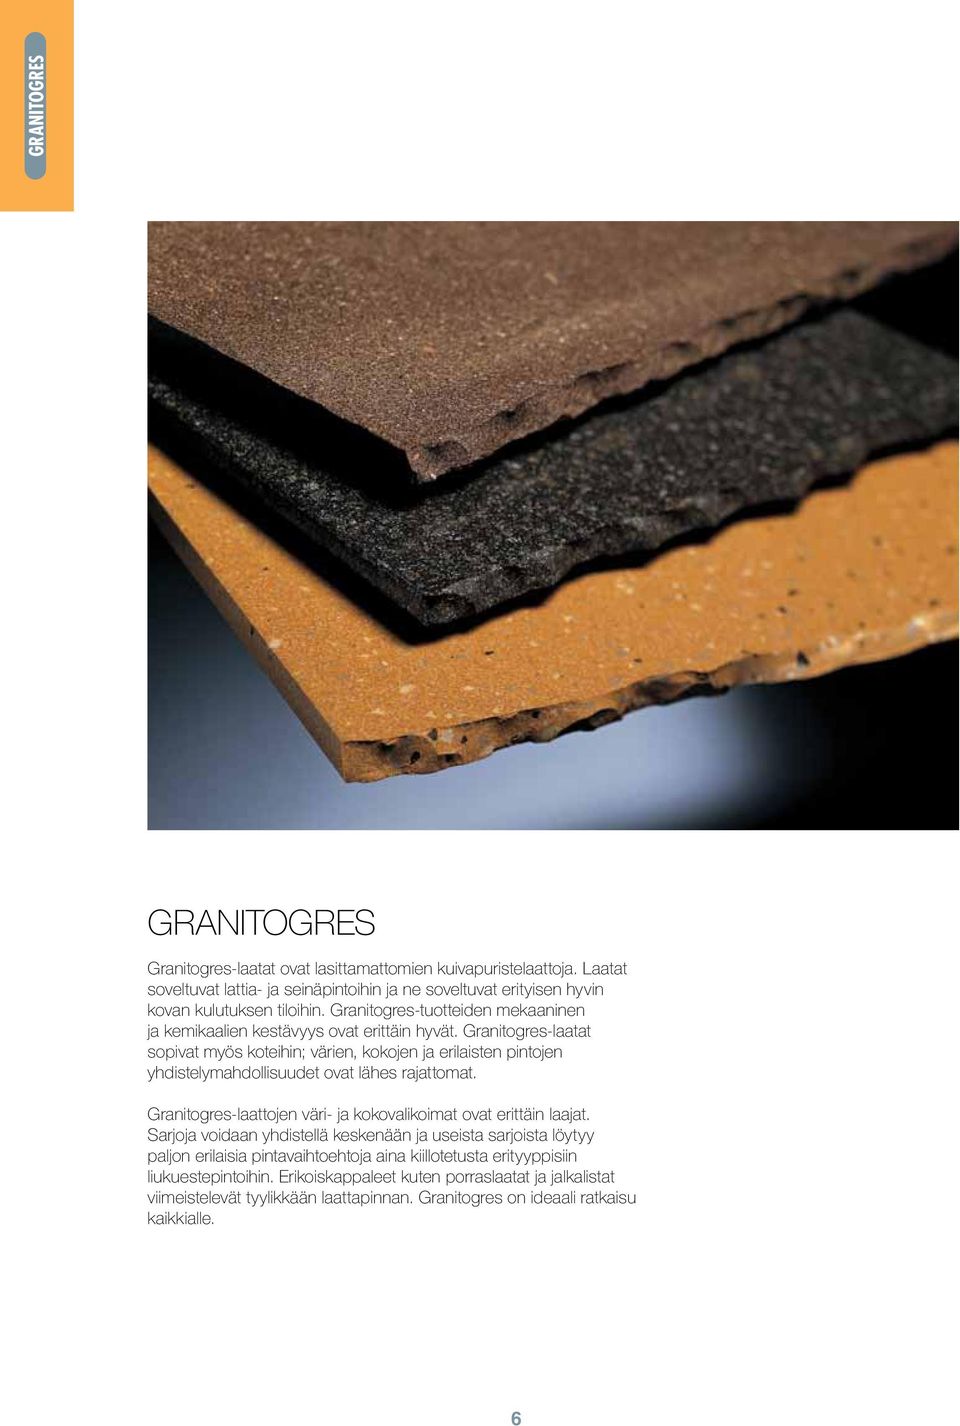 Granitogres-laatat sopivat myös koteihin; värien, kokojen ja erilaisten pintojen yhdistelymahdollisuudet ovat lähes rajattomat.